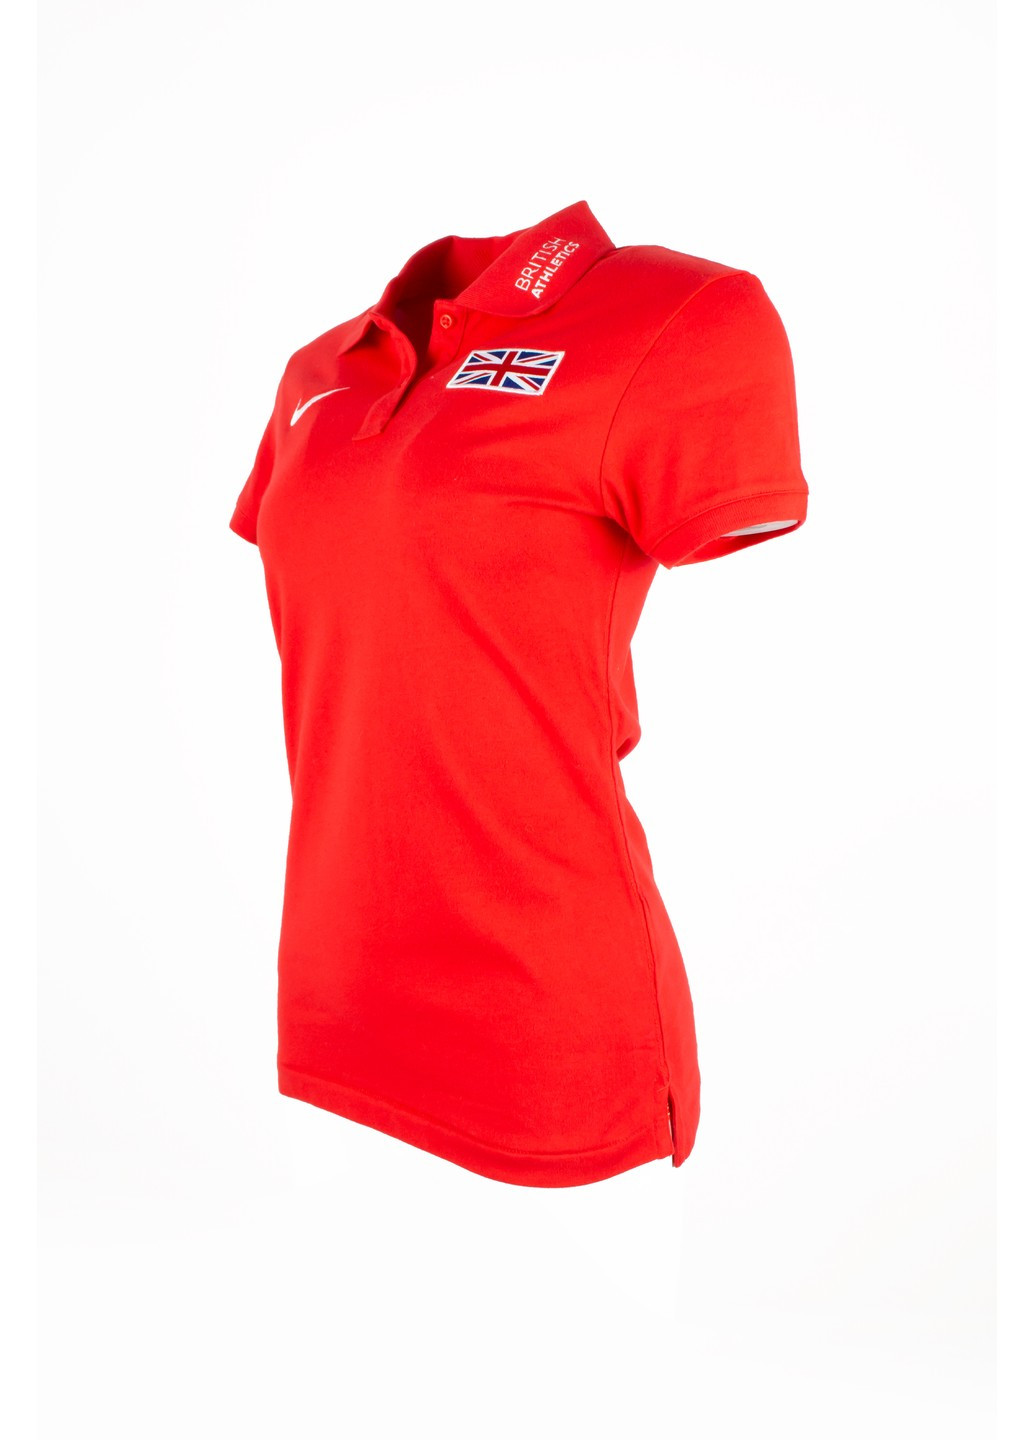 Красная летняя футболка женская polo british athletics 652585 Nike